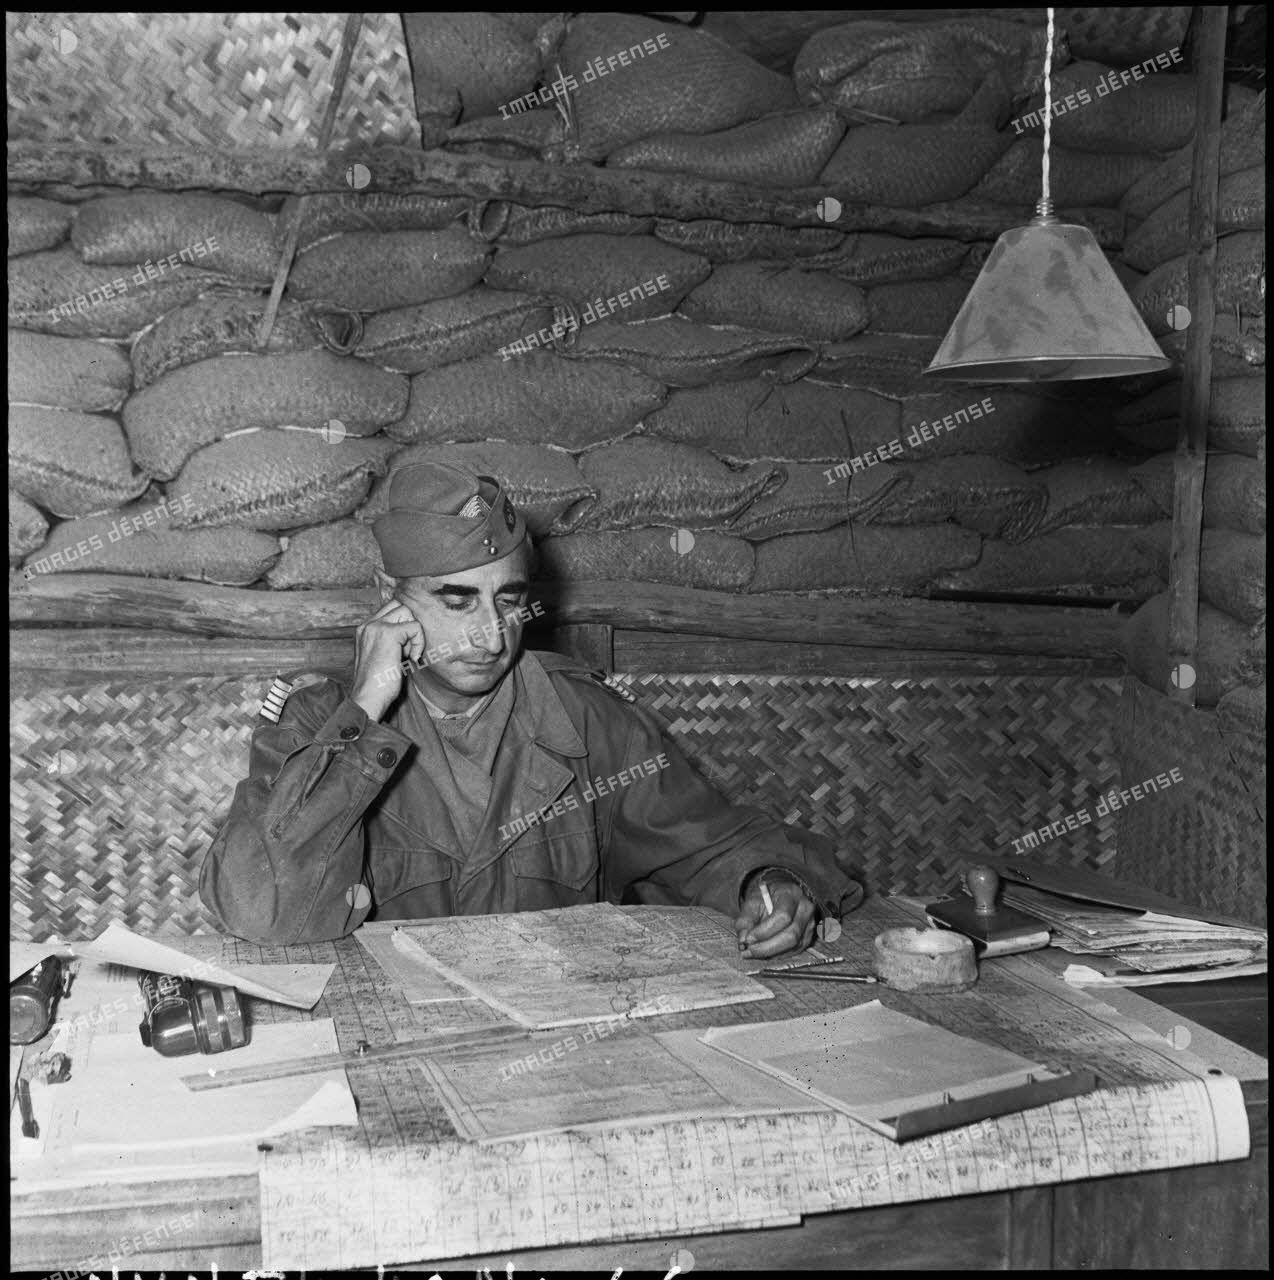 Le colonel de Castries, commandant le GONO (Groupement opérationnel du Nord-Ouest), dans un abri fortifié souterrain du camp retranché de Diên Biên Phu.